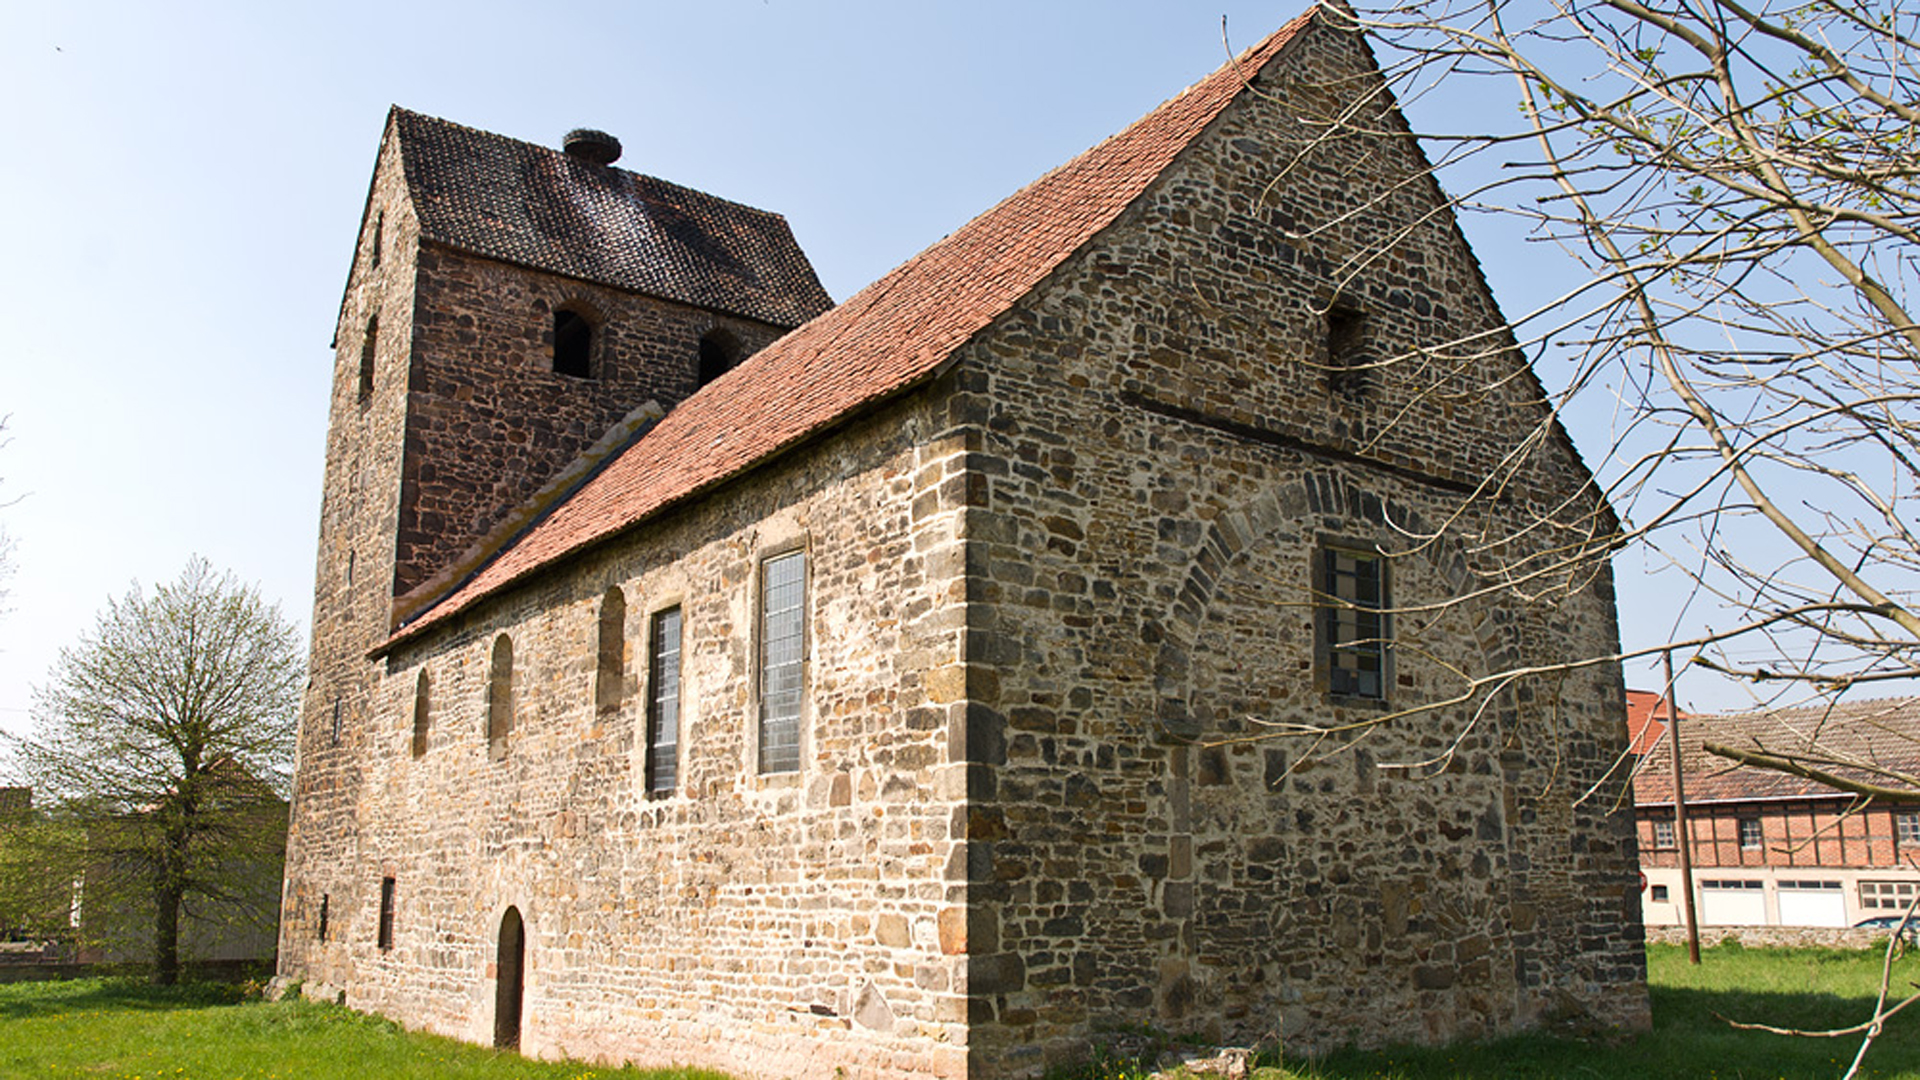 Platz zwei: Saalkirche St. Nikolai in Schwanefeld. Das um 1160 errichtete Bauwerk ist eine der ältesten Kirchen in der Region. Der spätgotische Schnitzaltar im Inneren stammt vom Ende des 15. Jahrhunderts, die Emporen auf der West- und Nordseite wurden 1677 eingefügt.